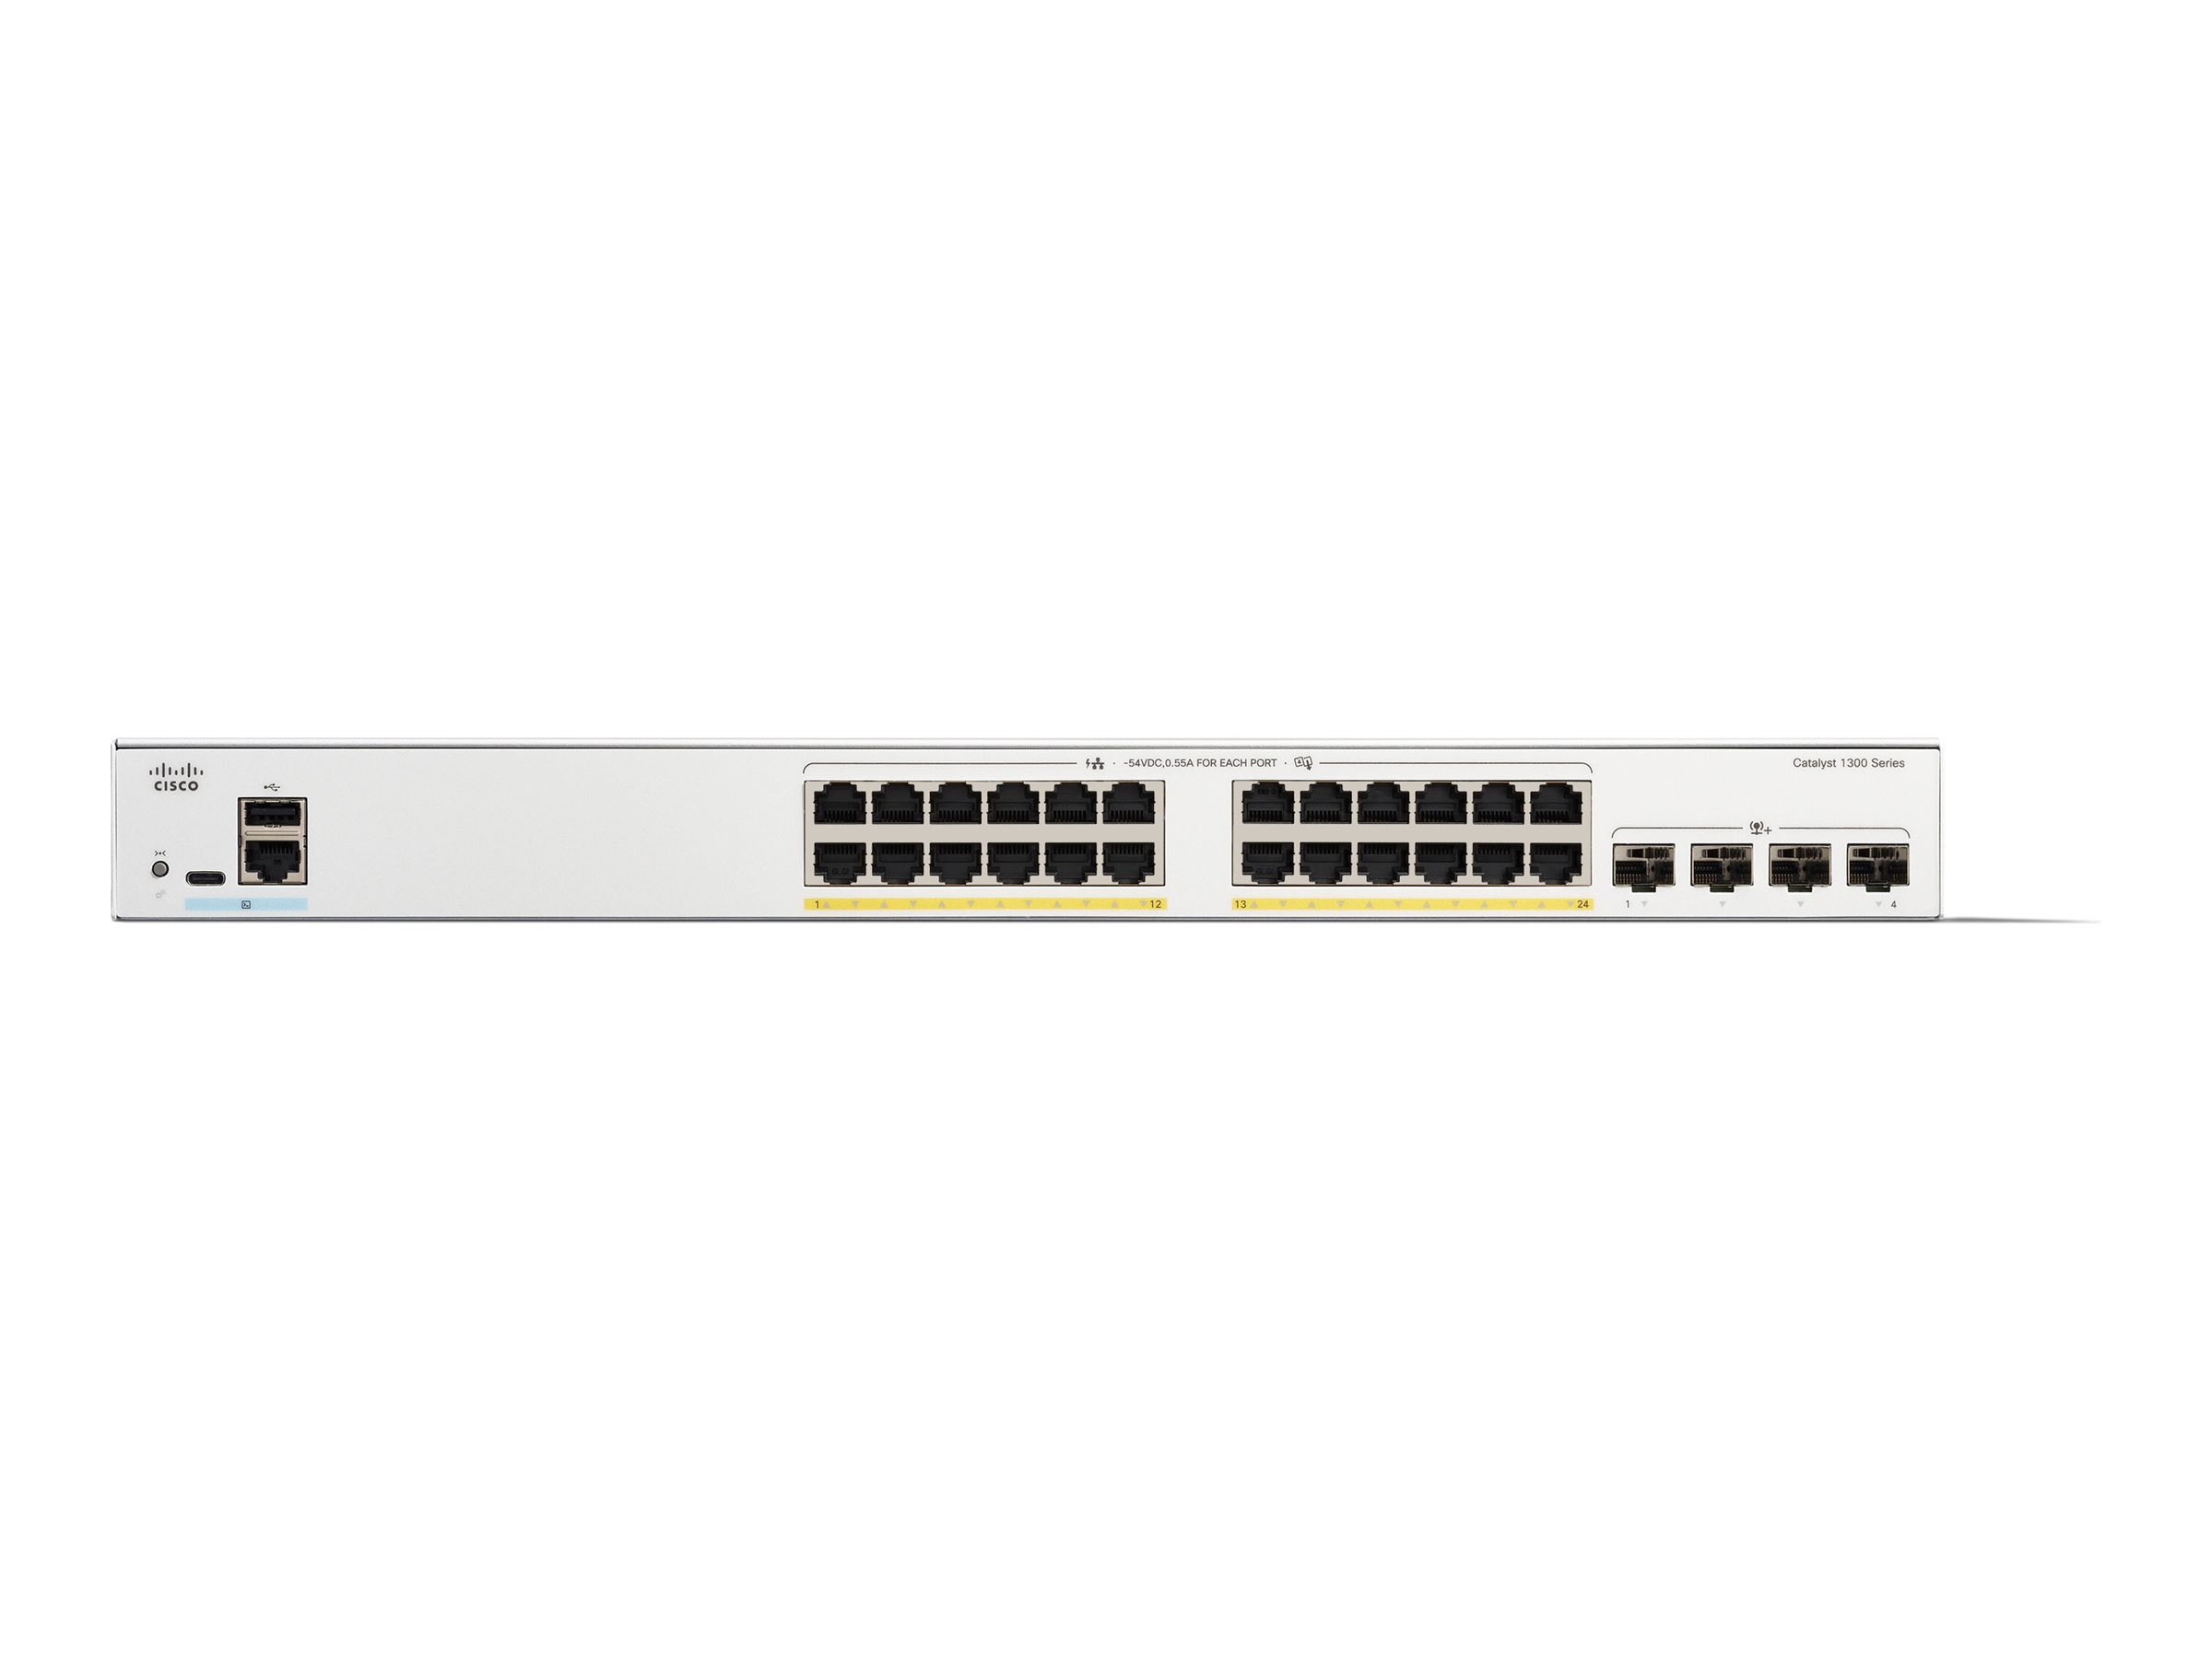 Cisco Catalyst 1300-24P-4X - Commutateur - C3 - Géré - 24 x 10/100/1000 (PoE+) + 4 x 10 Gigabit SFP+ - Montable sur rack - PoE+ (195 W) - C1300-24P-4X - Concentrateurs et commutateurs gigabit